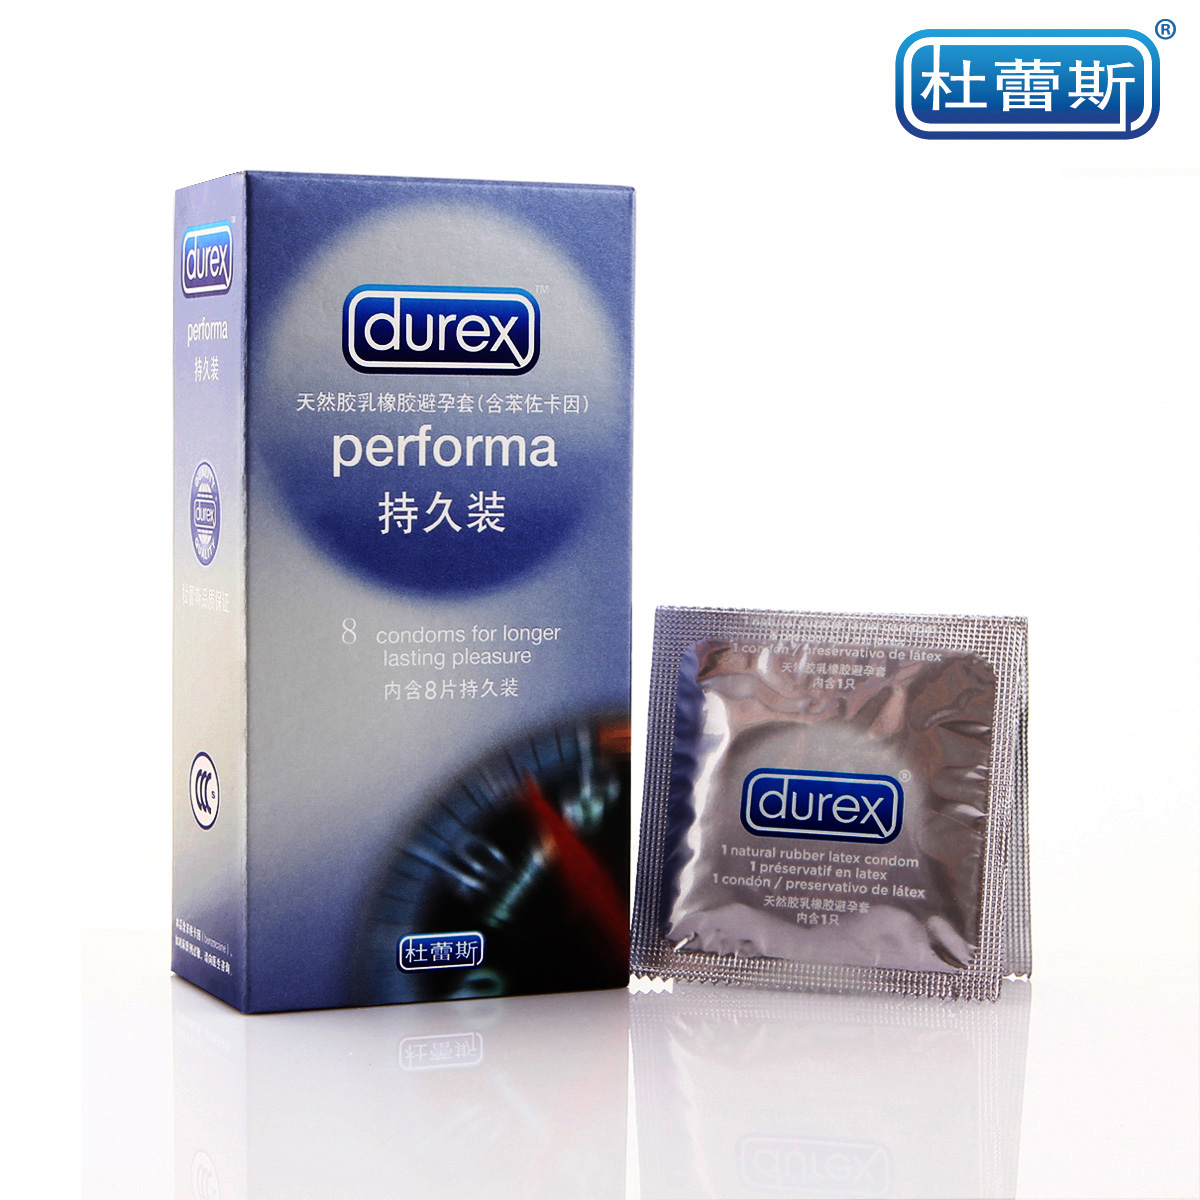 Durex condoms material